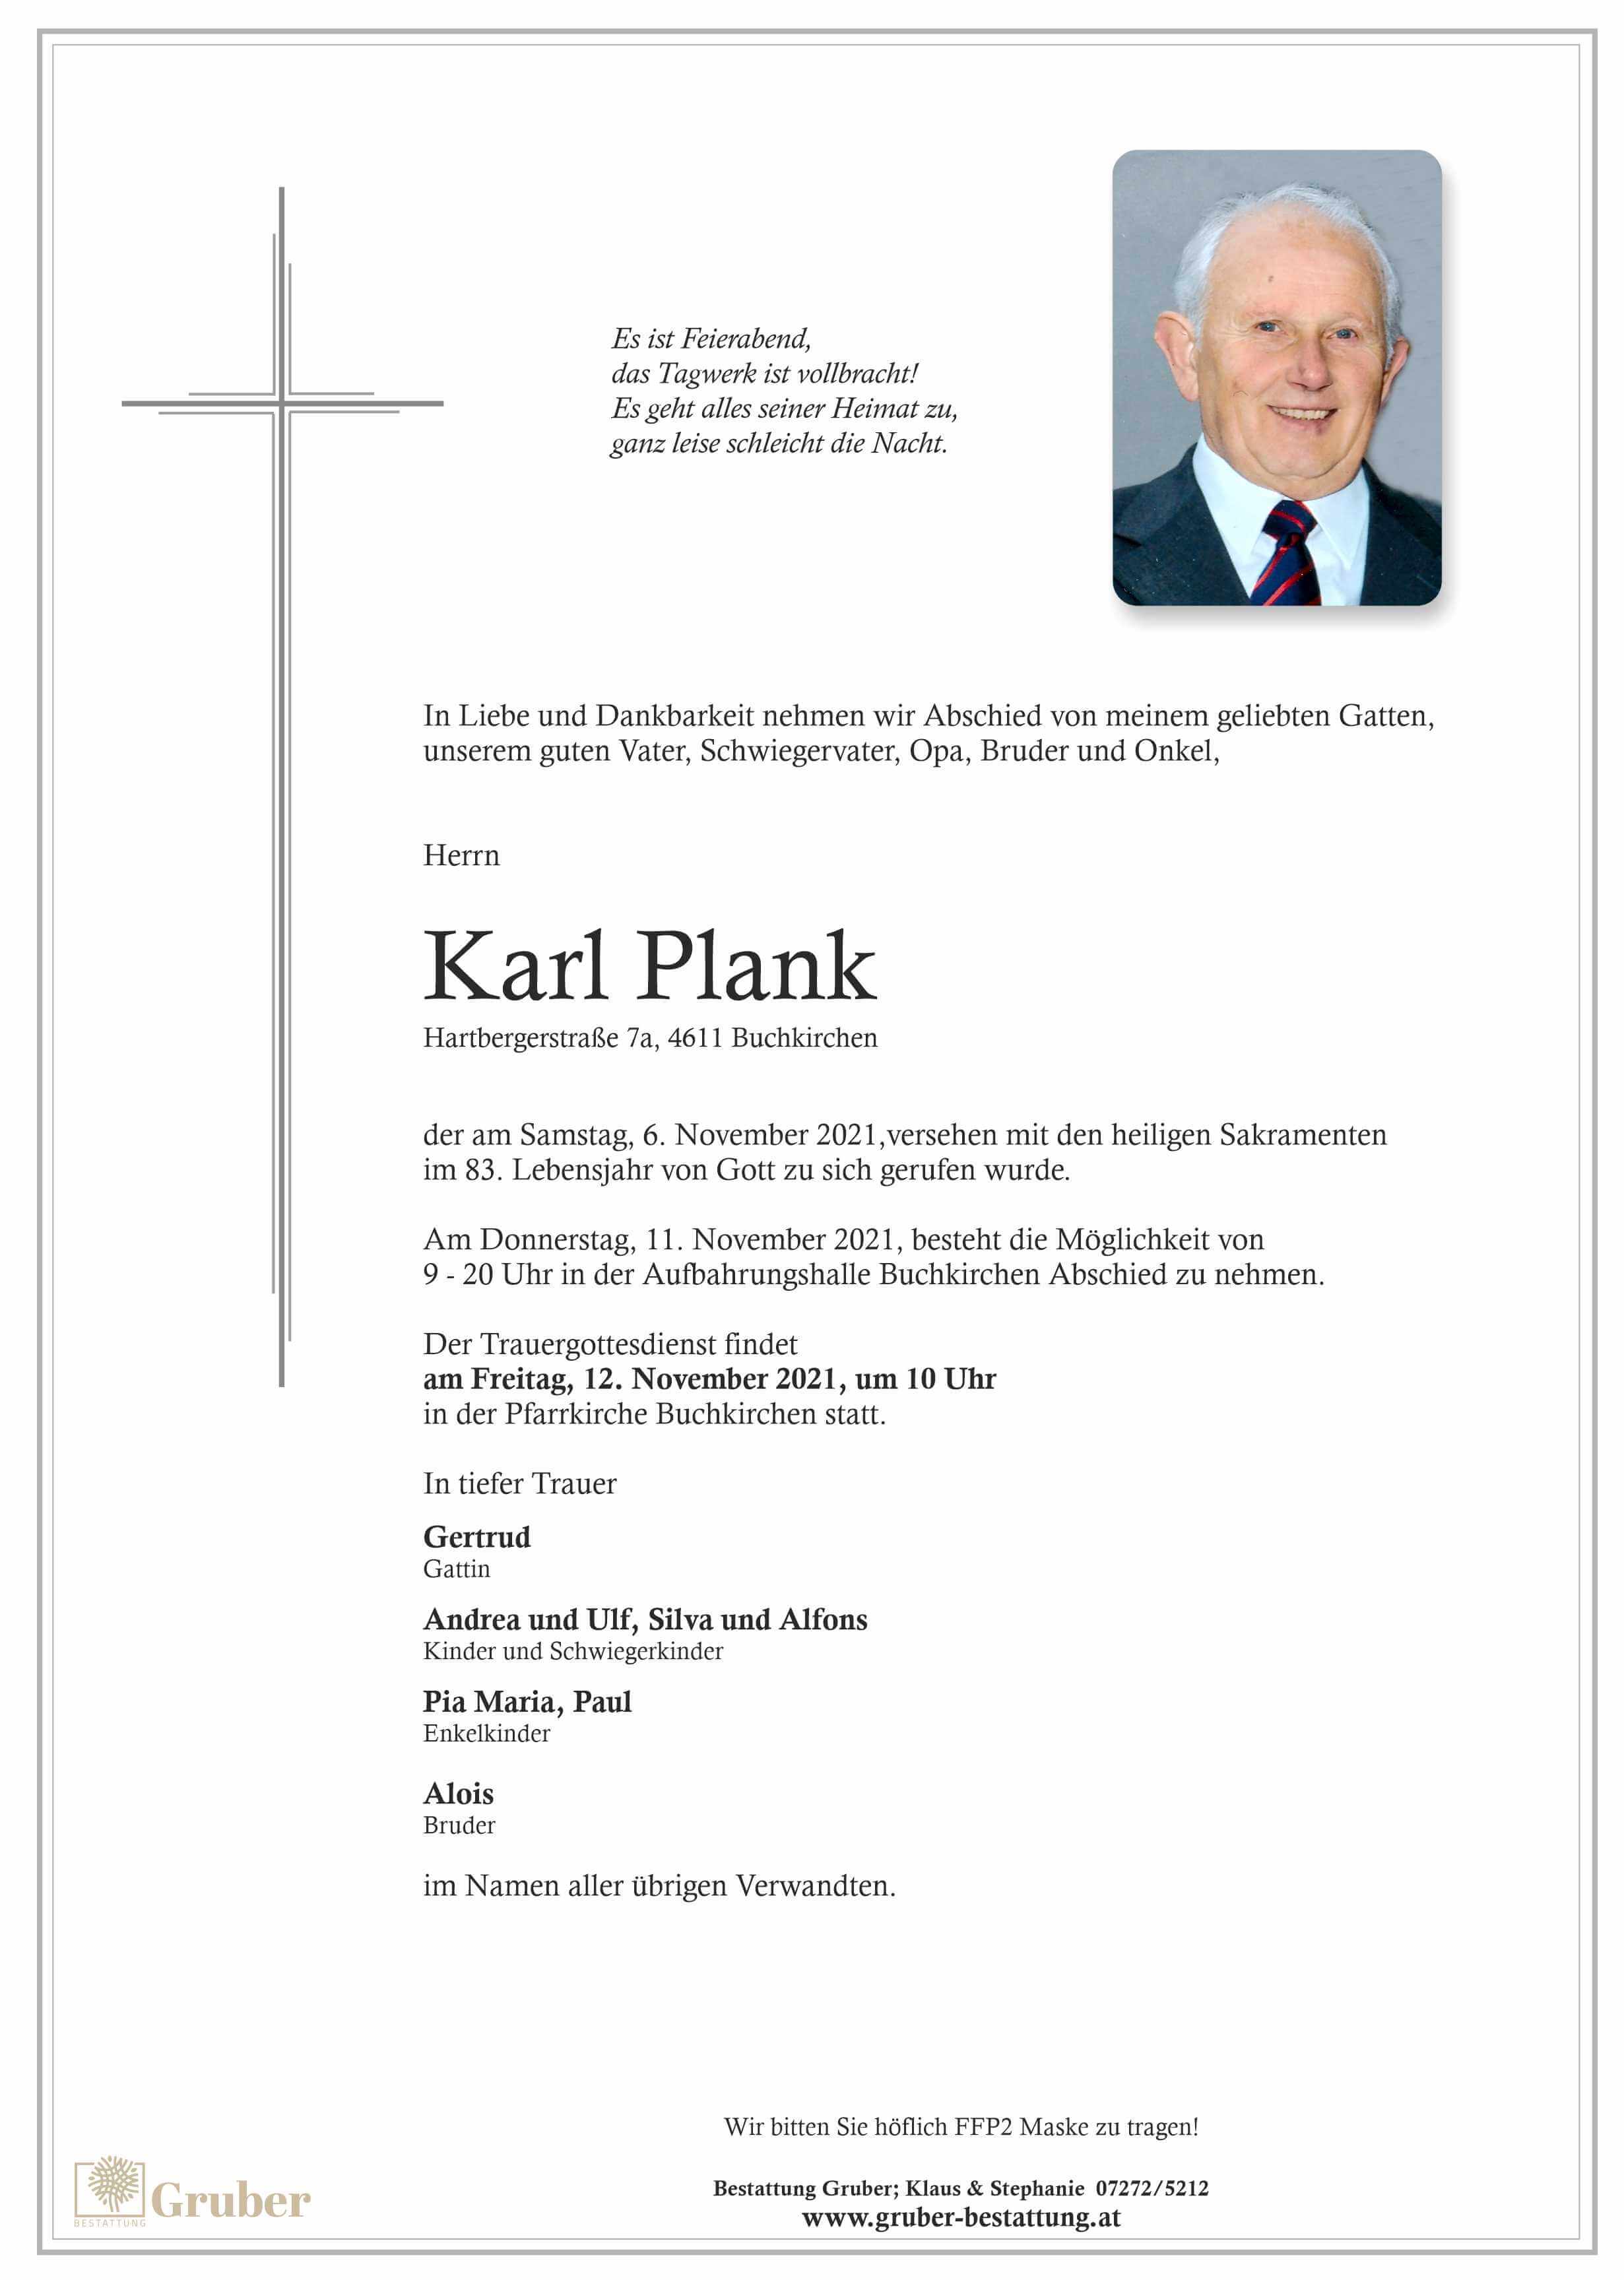 Karl Plank (Buchkirchen)